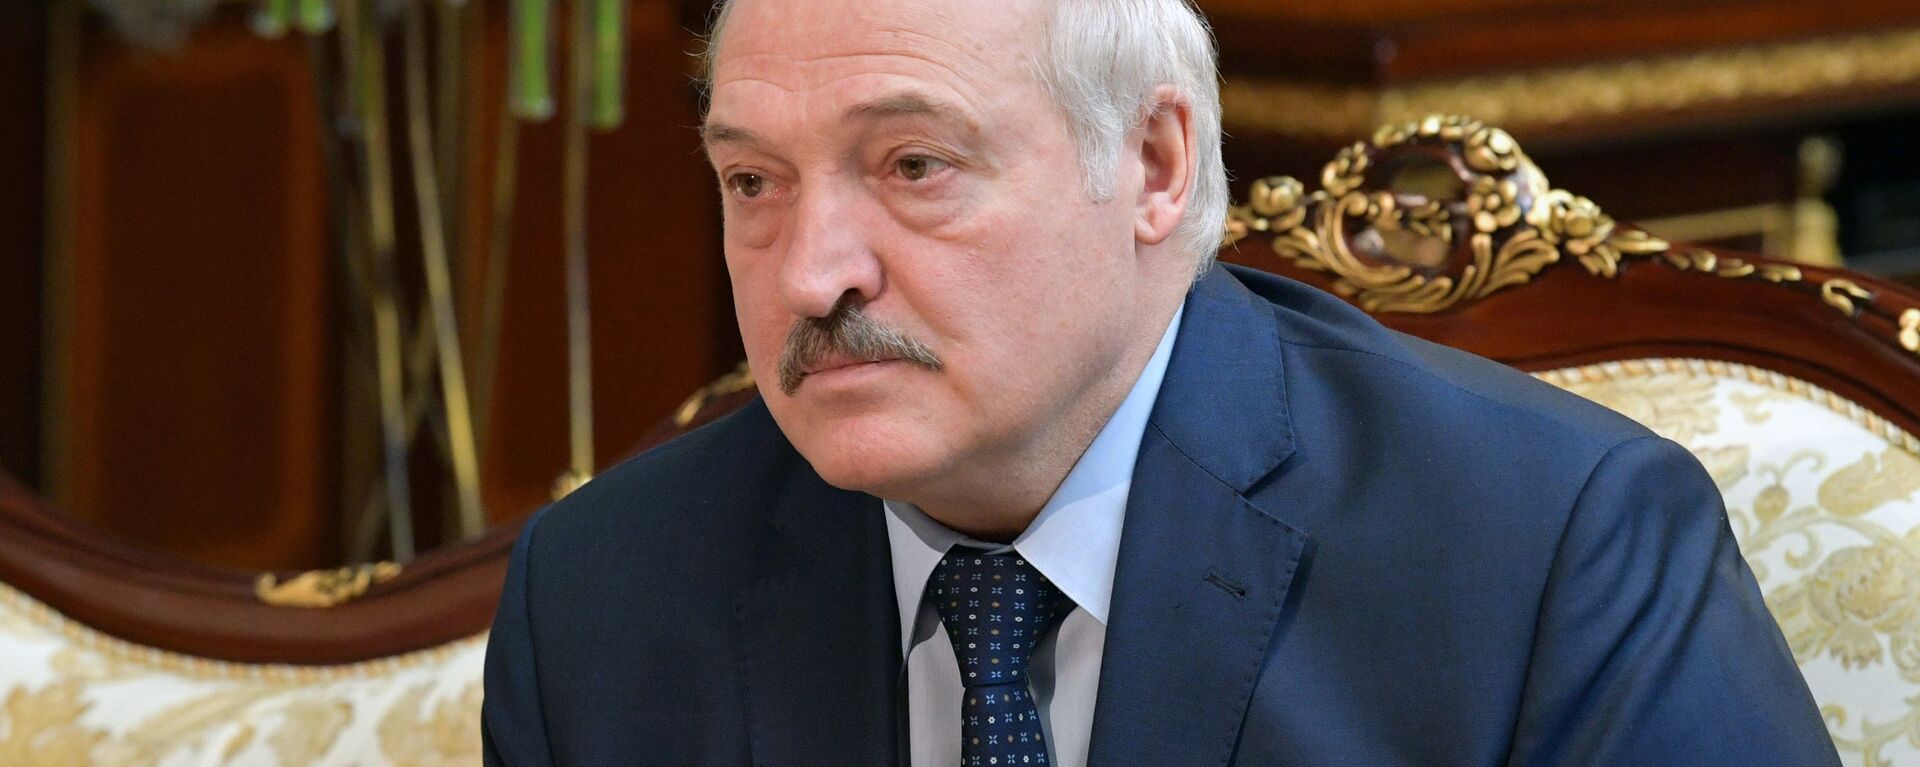 Президент Белоруссии Александр Лукашенко  - Sputnik Србија, 1920, 12.09.2021